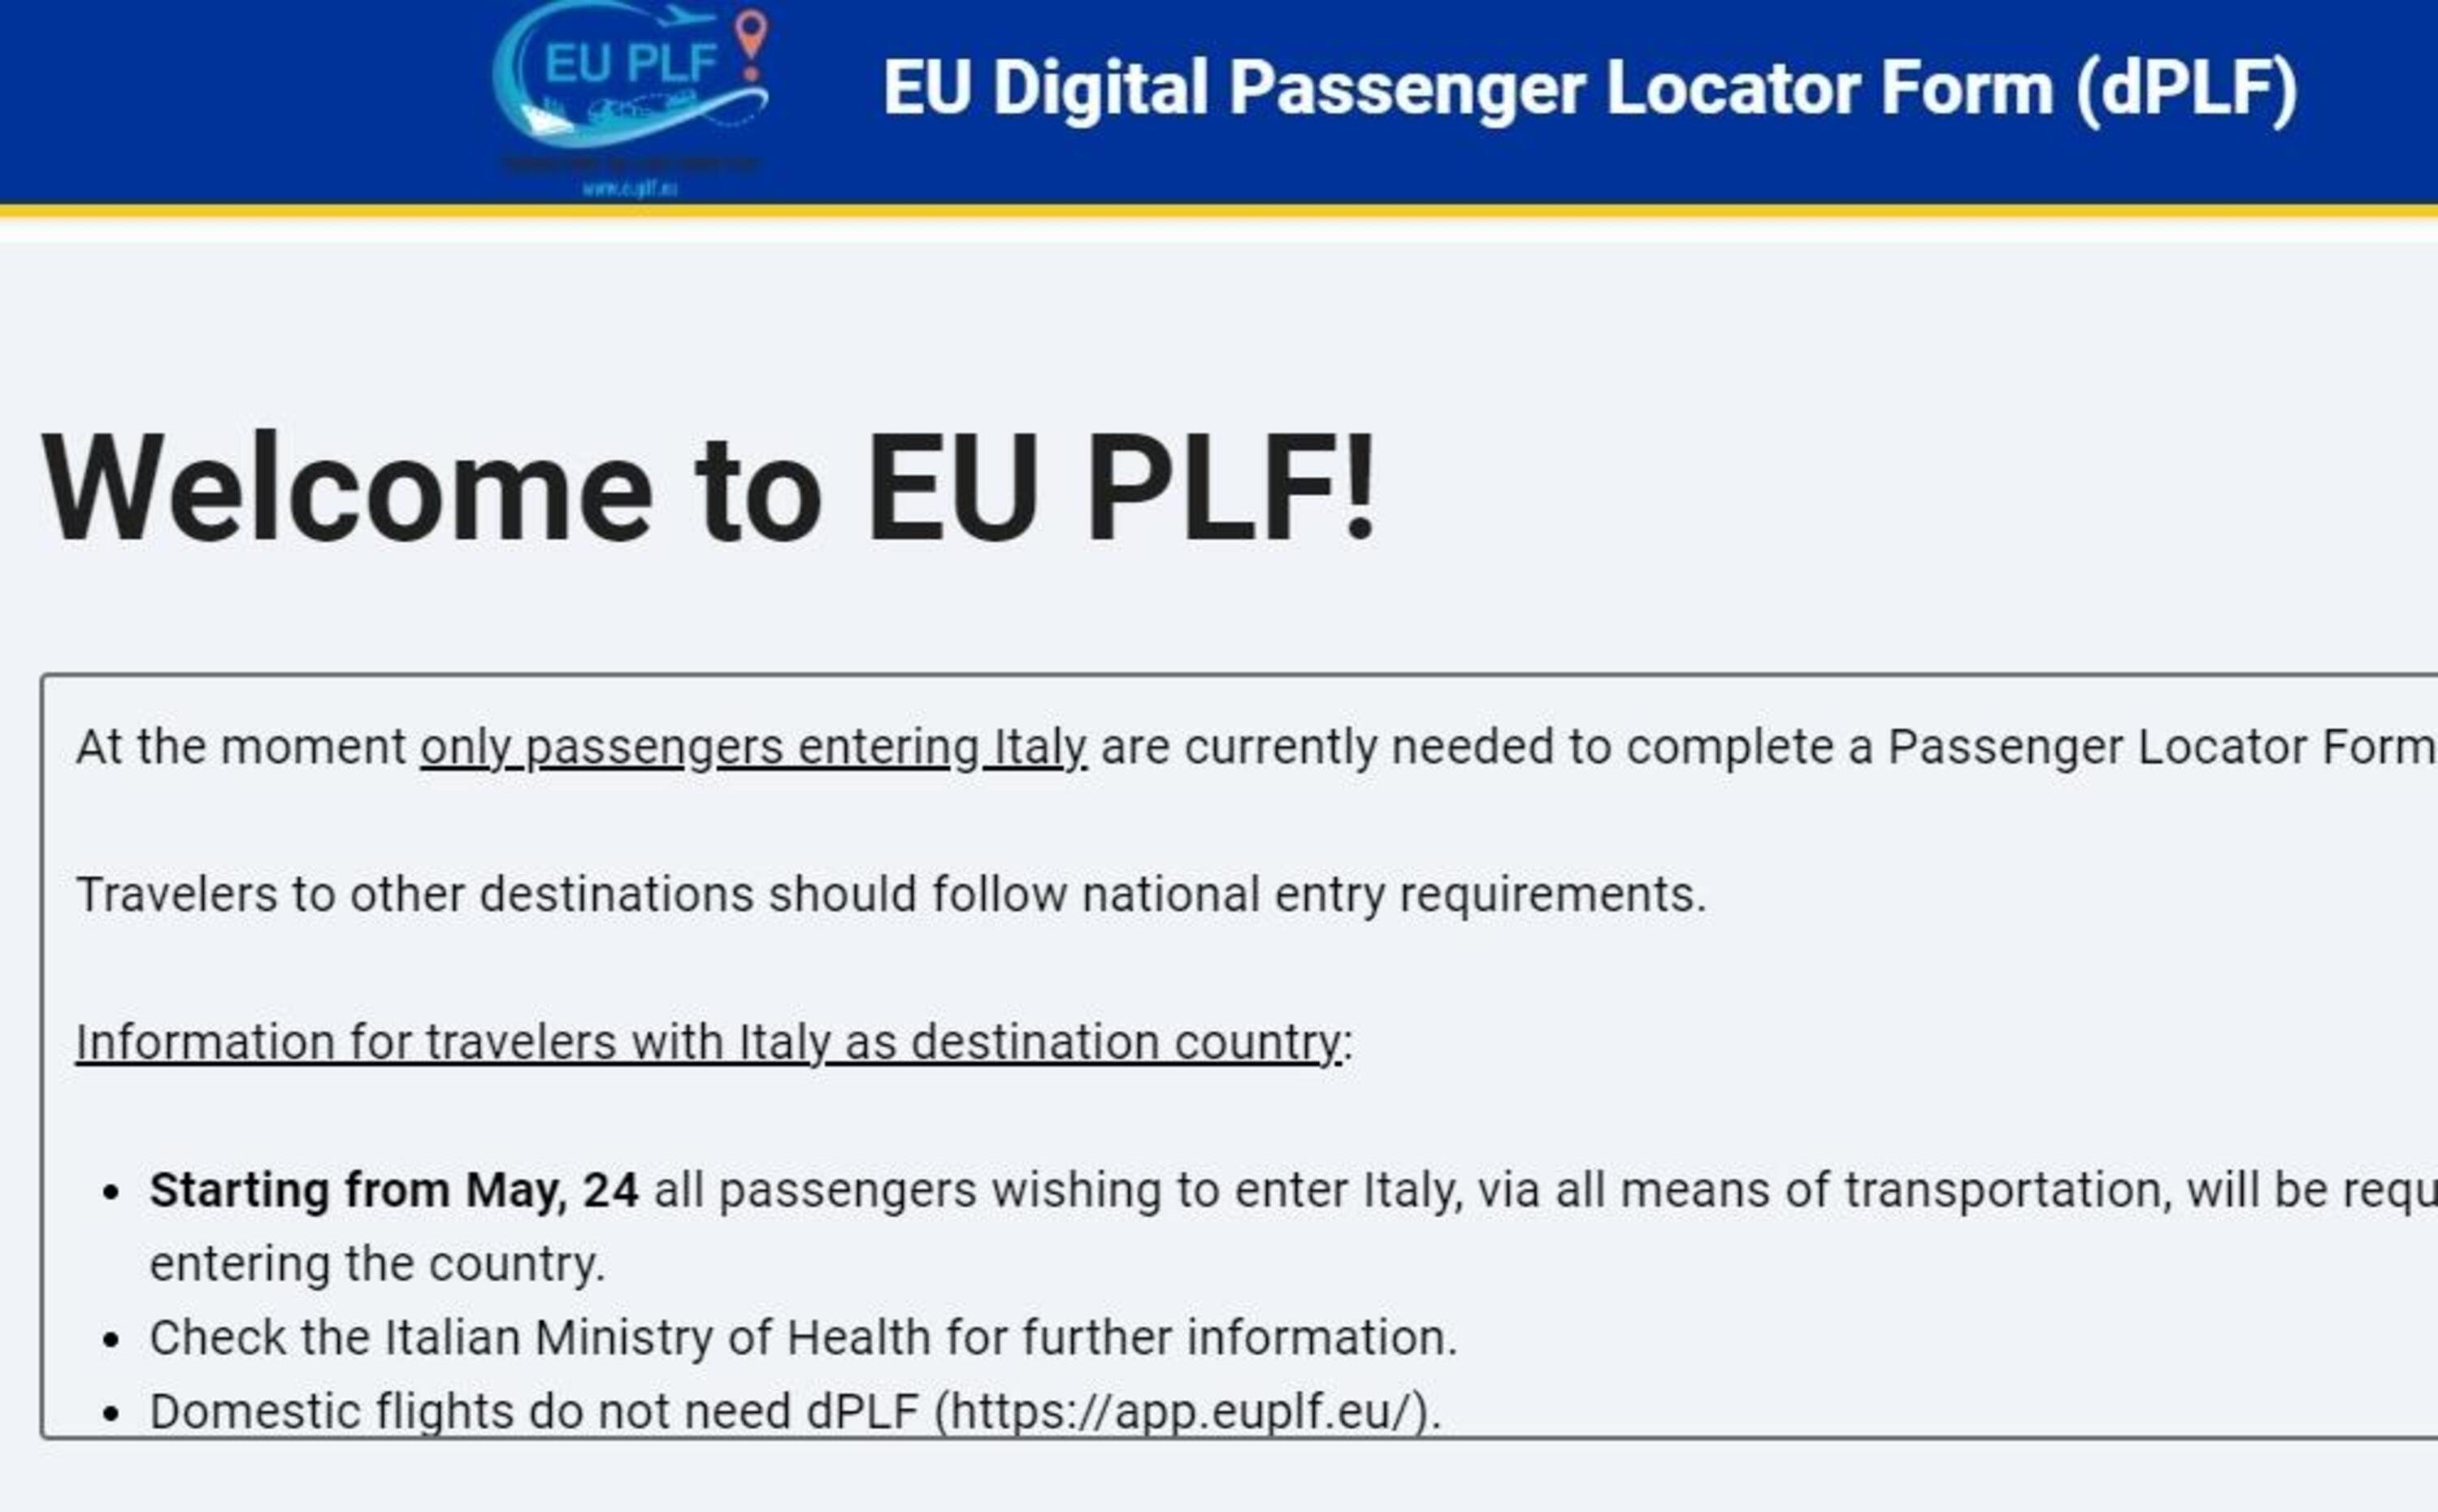 Viaggiare ed entrare in Italia venendo da Paesi esteri, Basta autocertificazione: serve il dPLF [online]